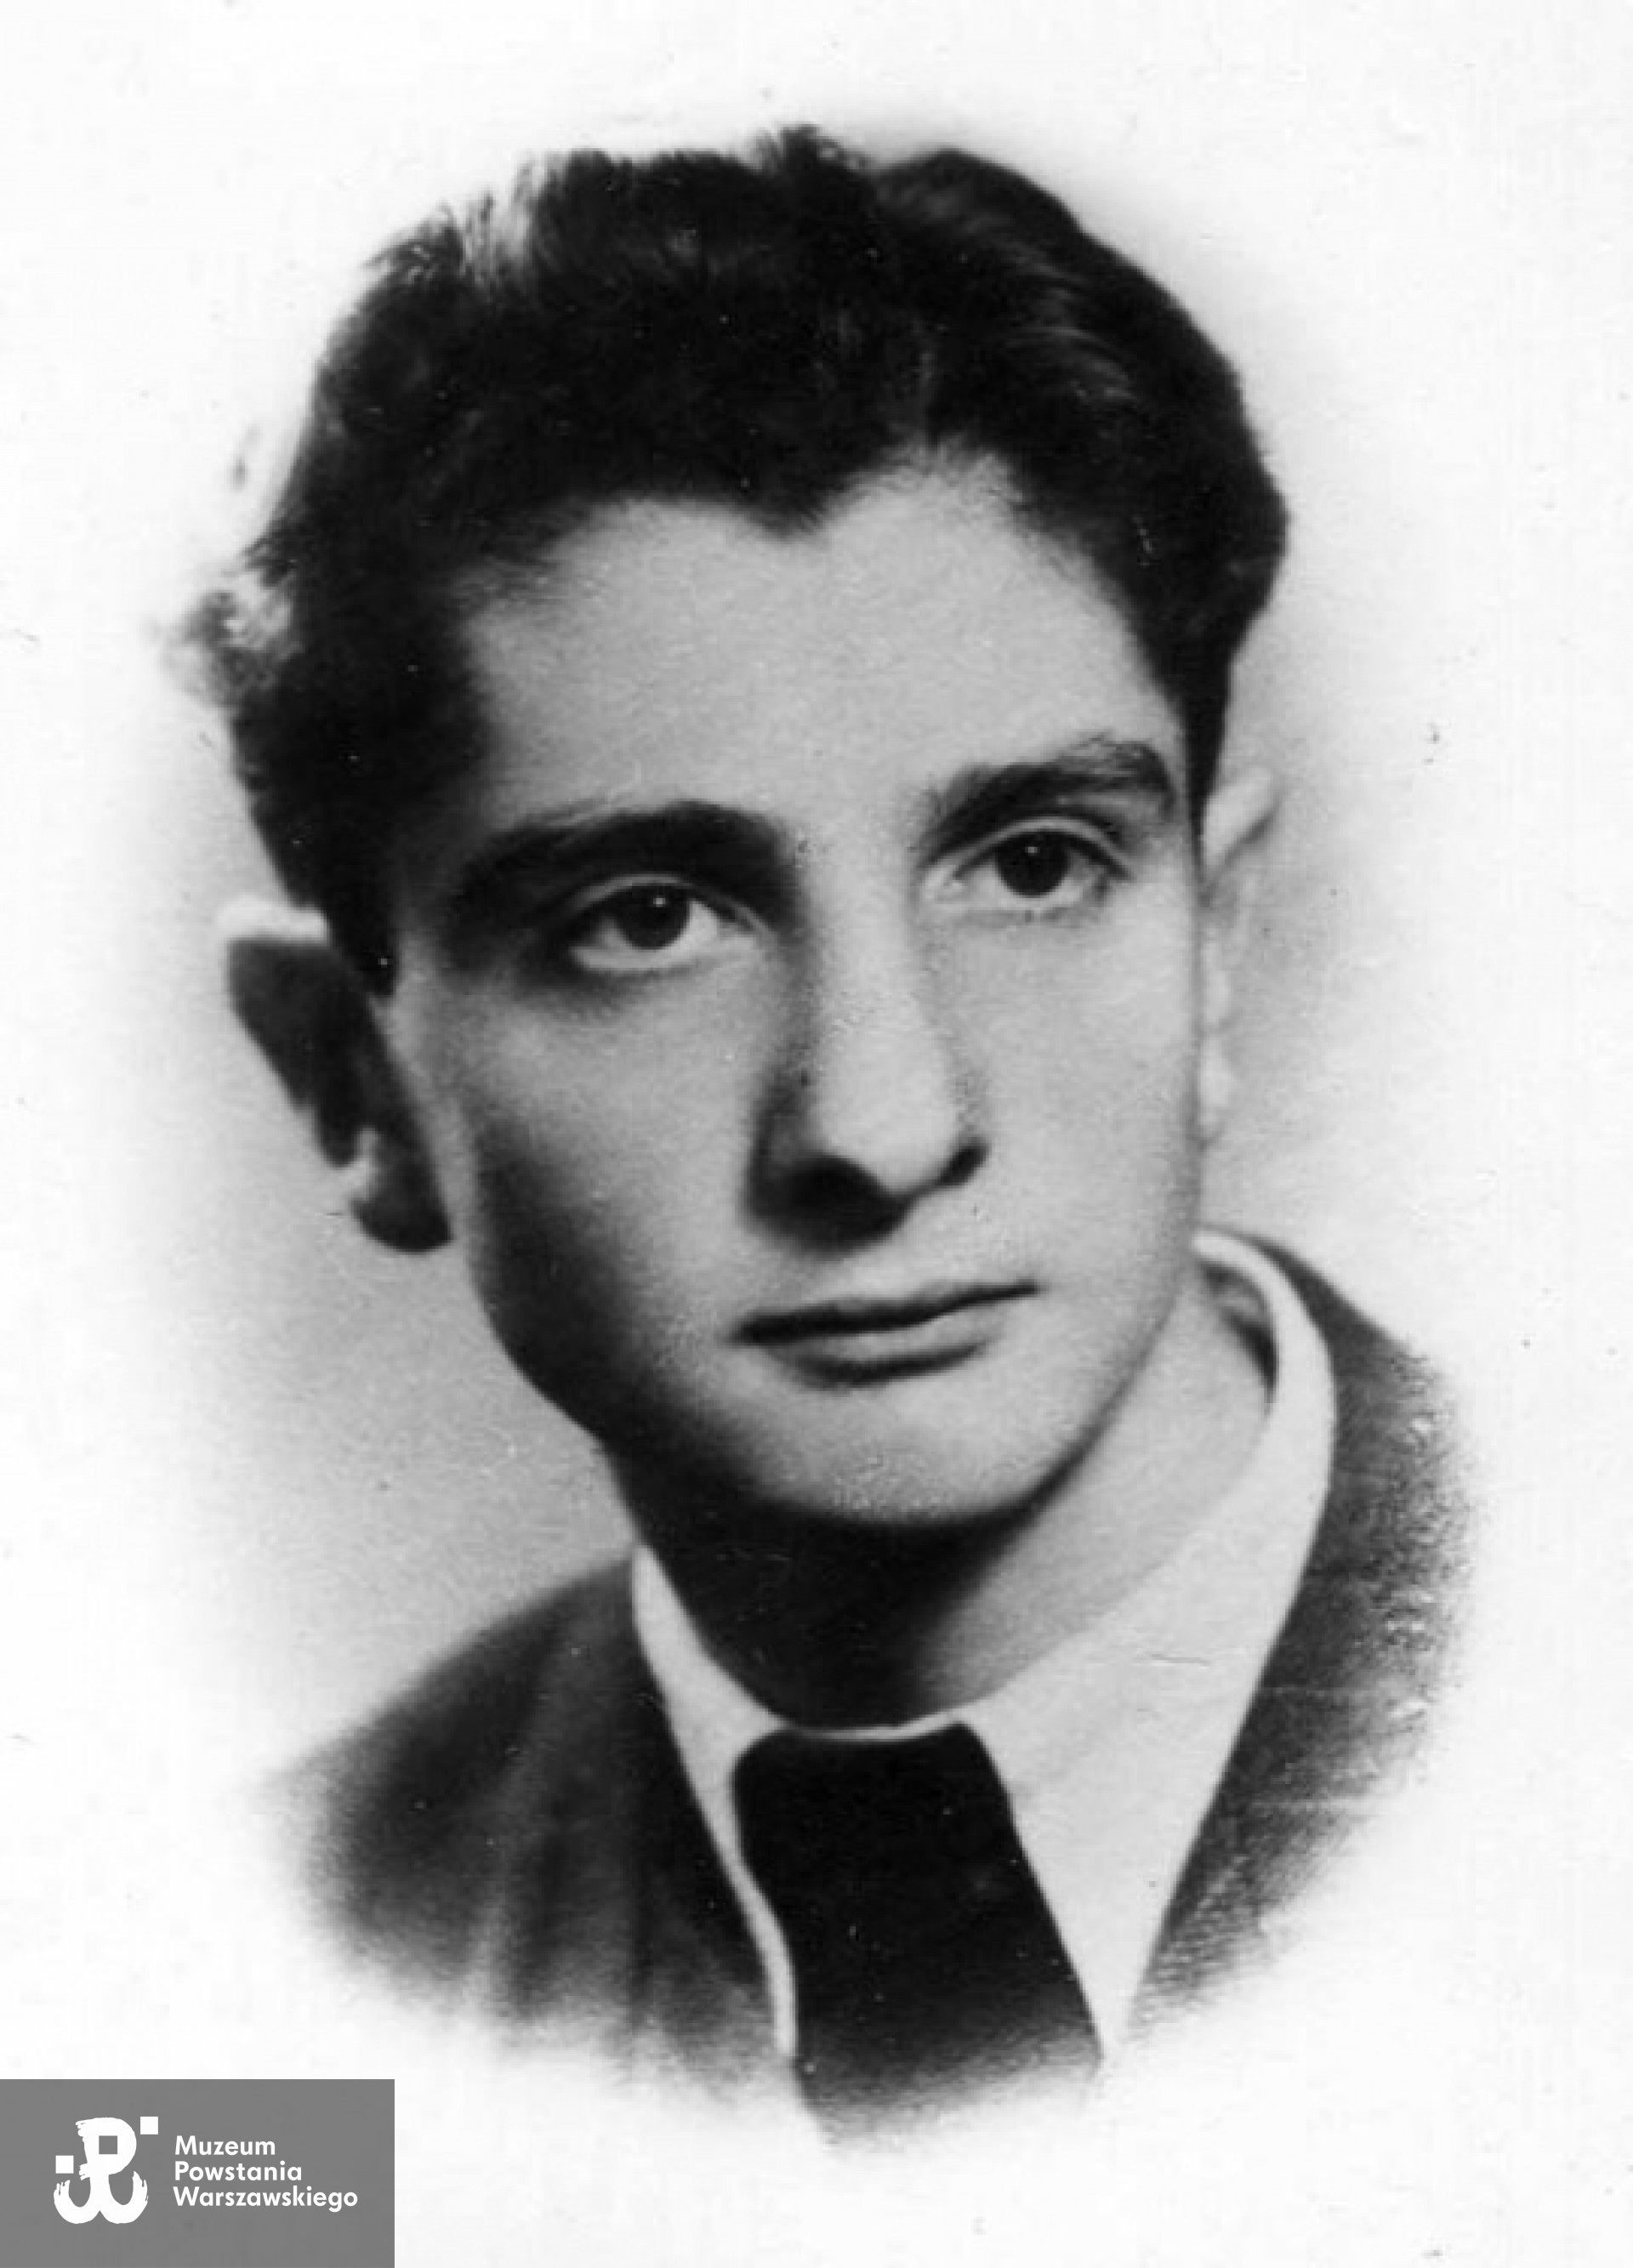 Jerzy Kazubek "Tadeusz" (1925 - 1944)